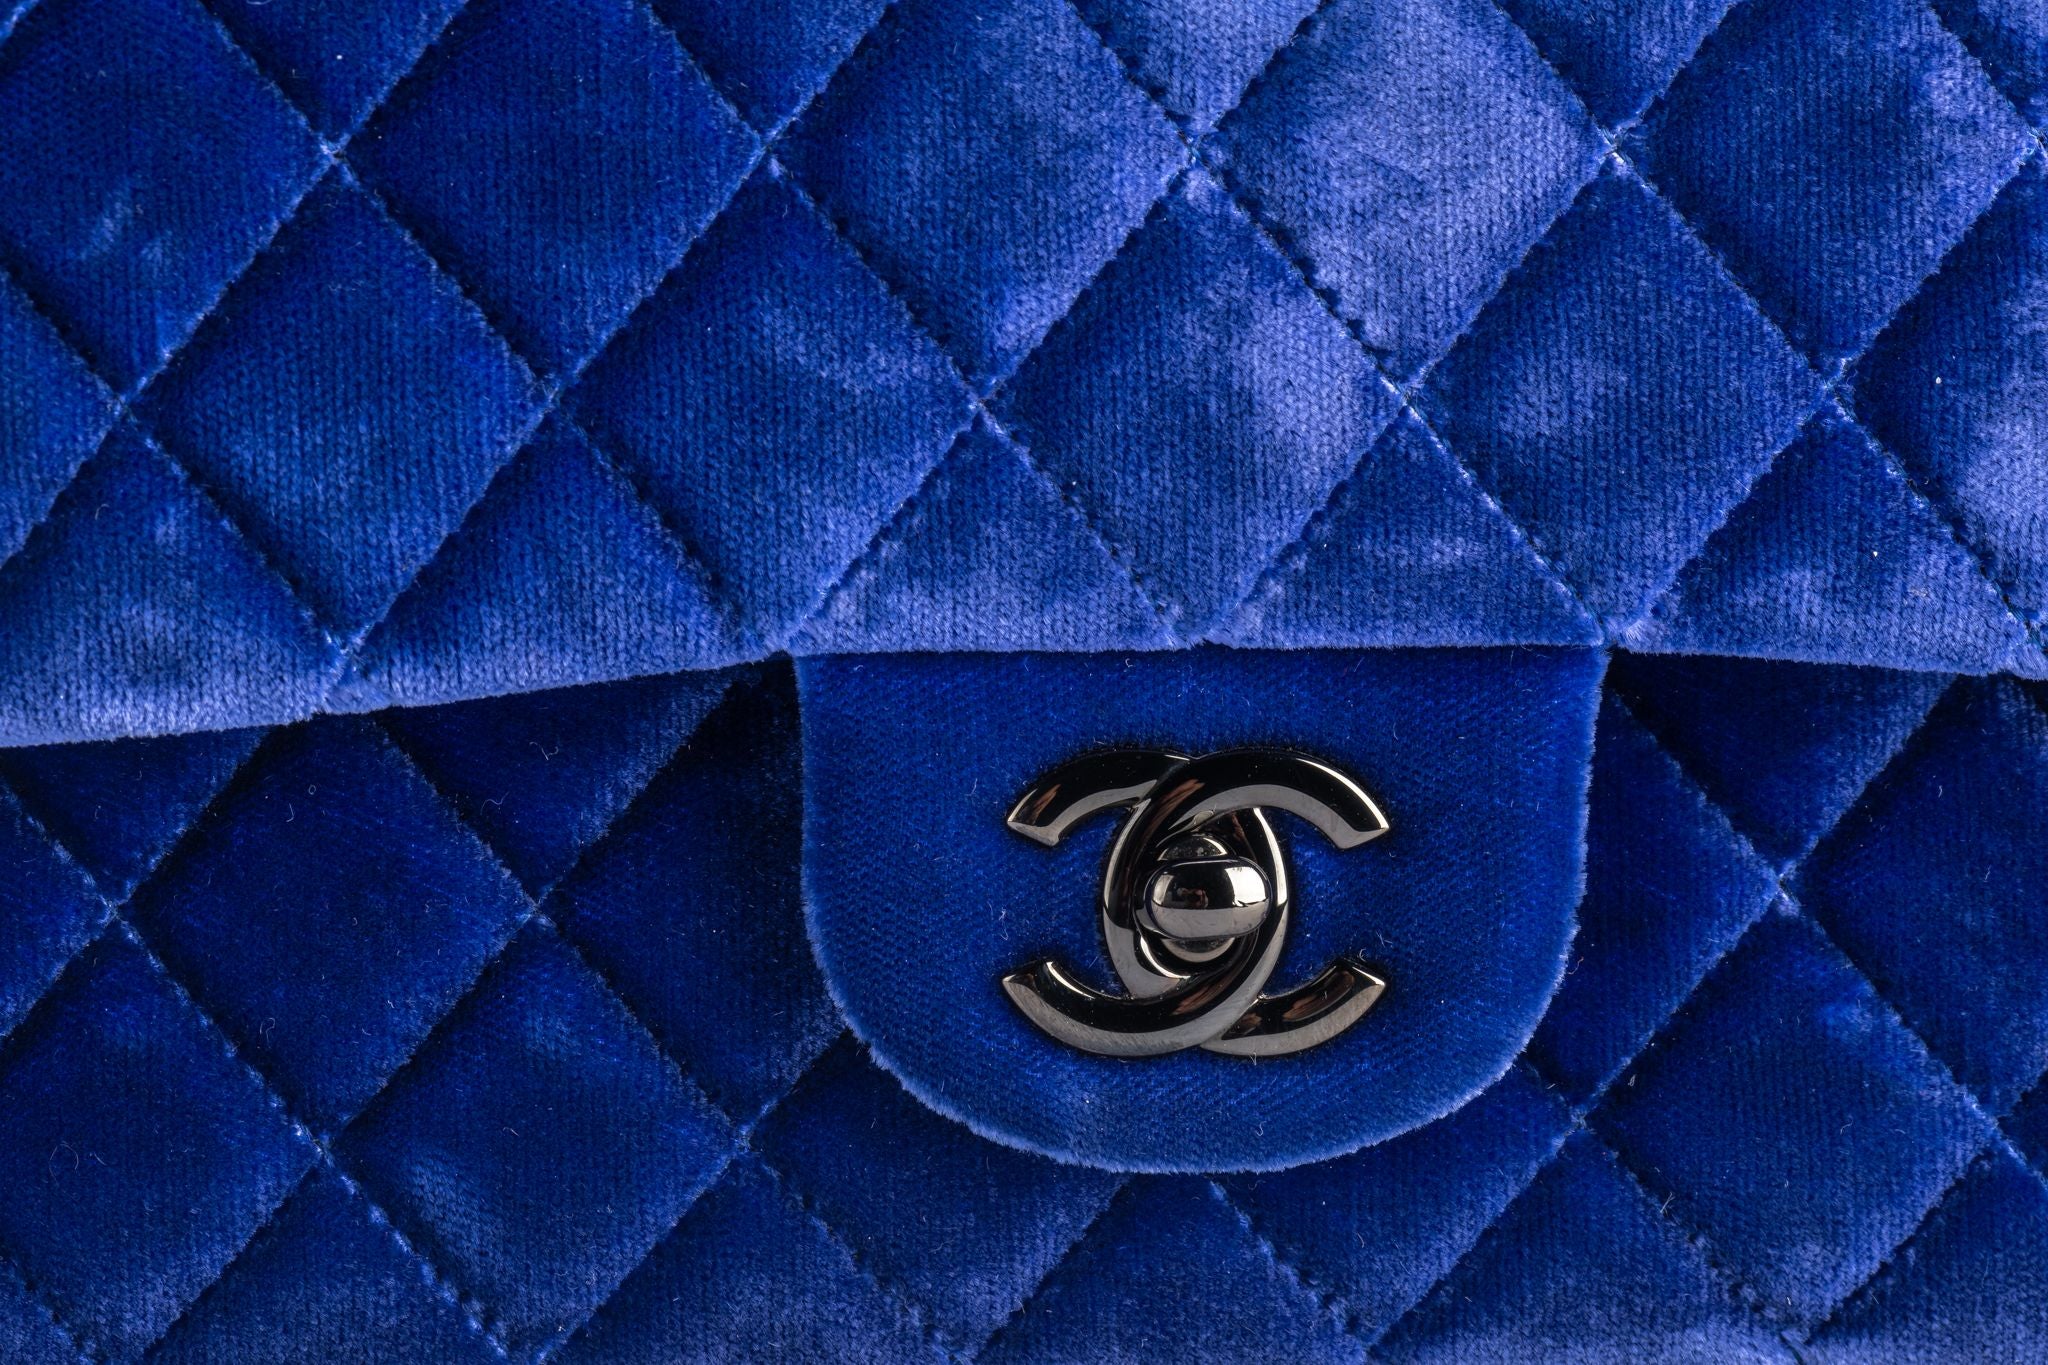 Chanel Blue Velvet Mini Cross Body Bag - Vintage Lux